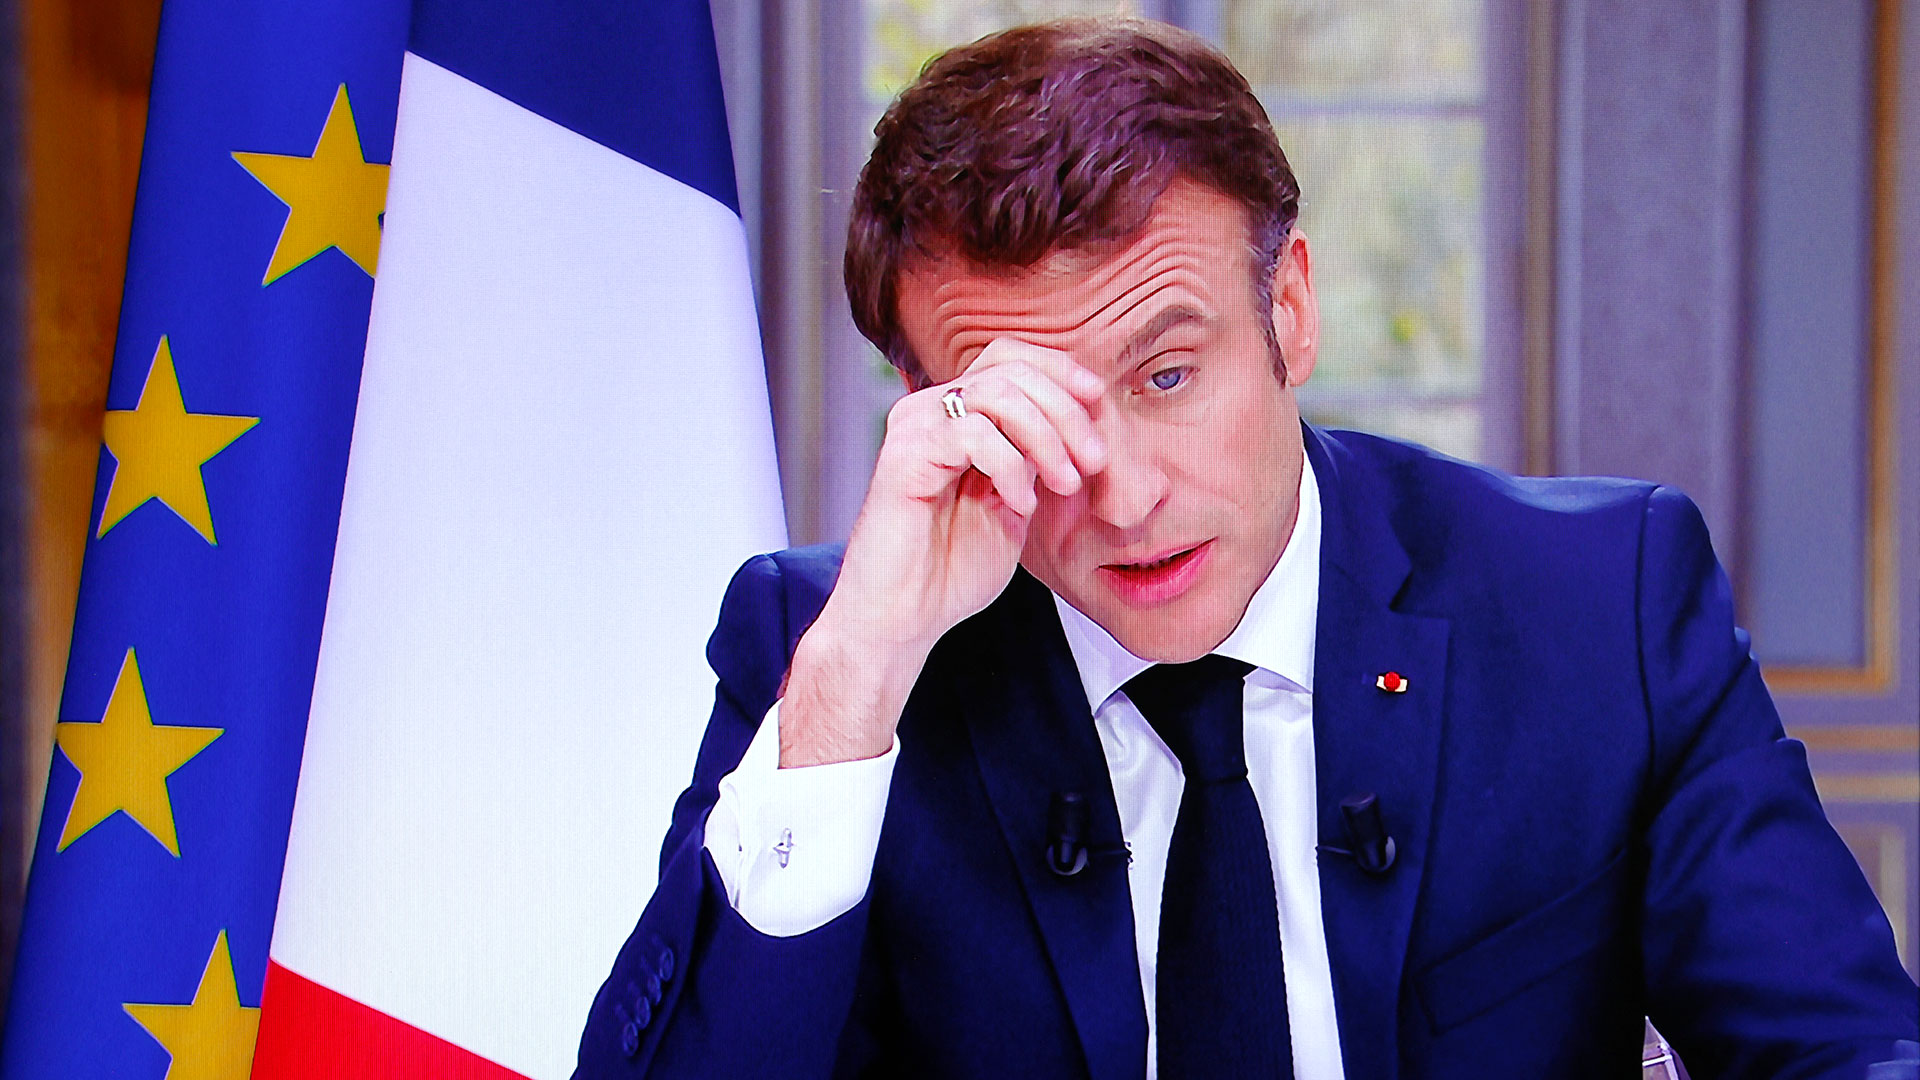 El presidente Emmanuel Macron elude la ira desatada en las calles de Francia tras la reforma de pensiones. Sin embargo, hay temor por la radicalización en la movilización de este jueves.